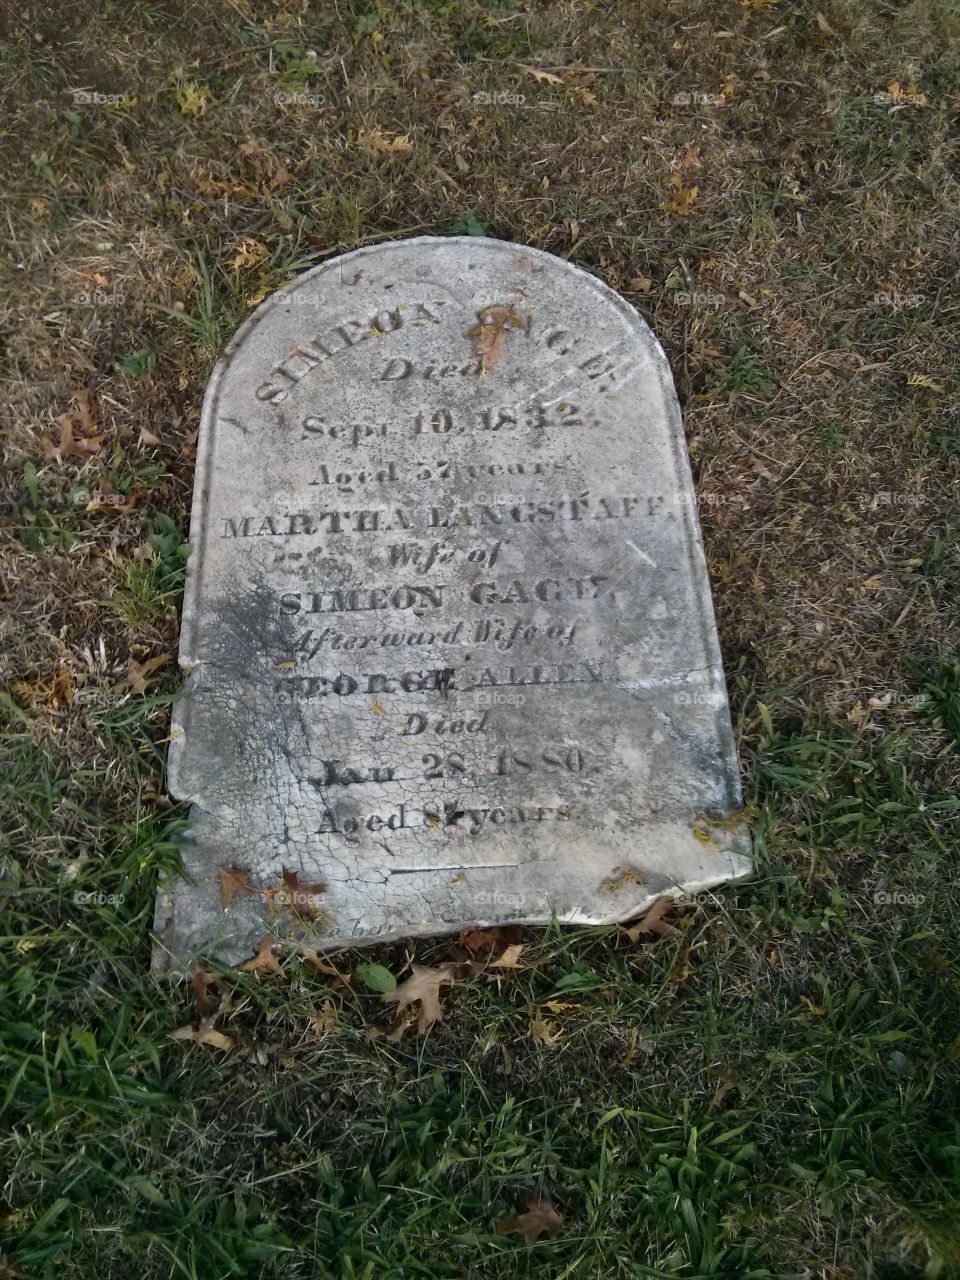 Piscatawaytown Burial ground fallen tombstone